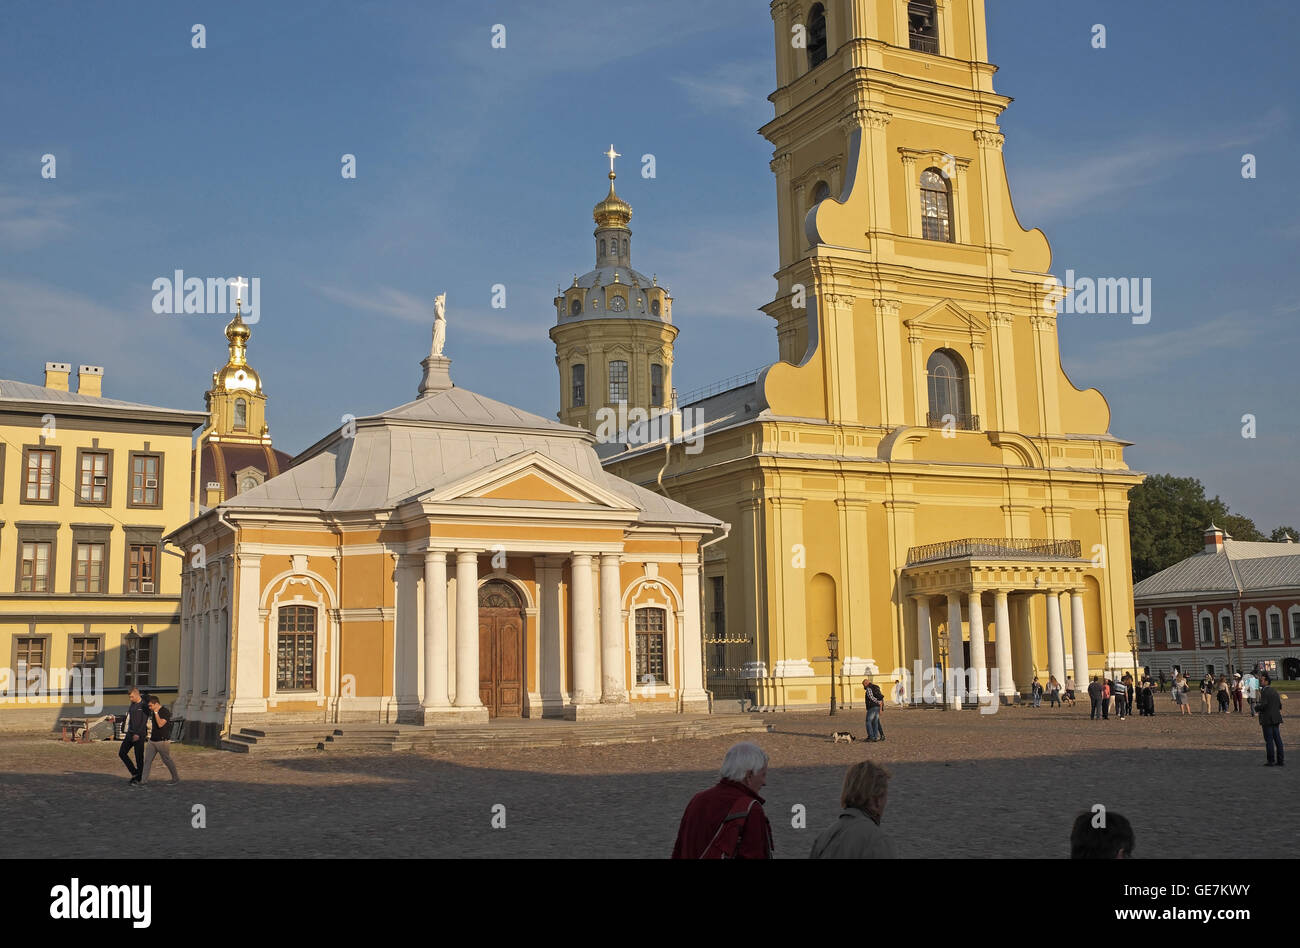 Boathouse (à gauche) et de la Cathédrale des Saints Pierre et Paul, la forteresse des Saints Pierre et Paul, Saint-Pétersbourg, Russie. Banque D'Images